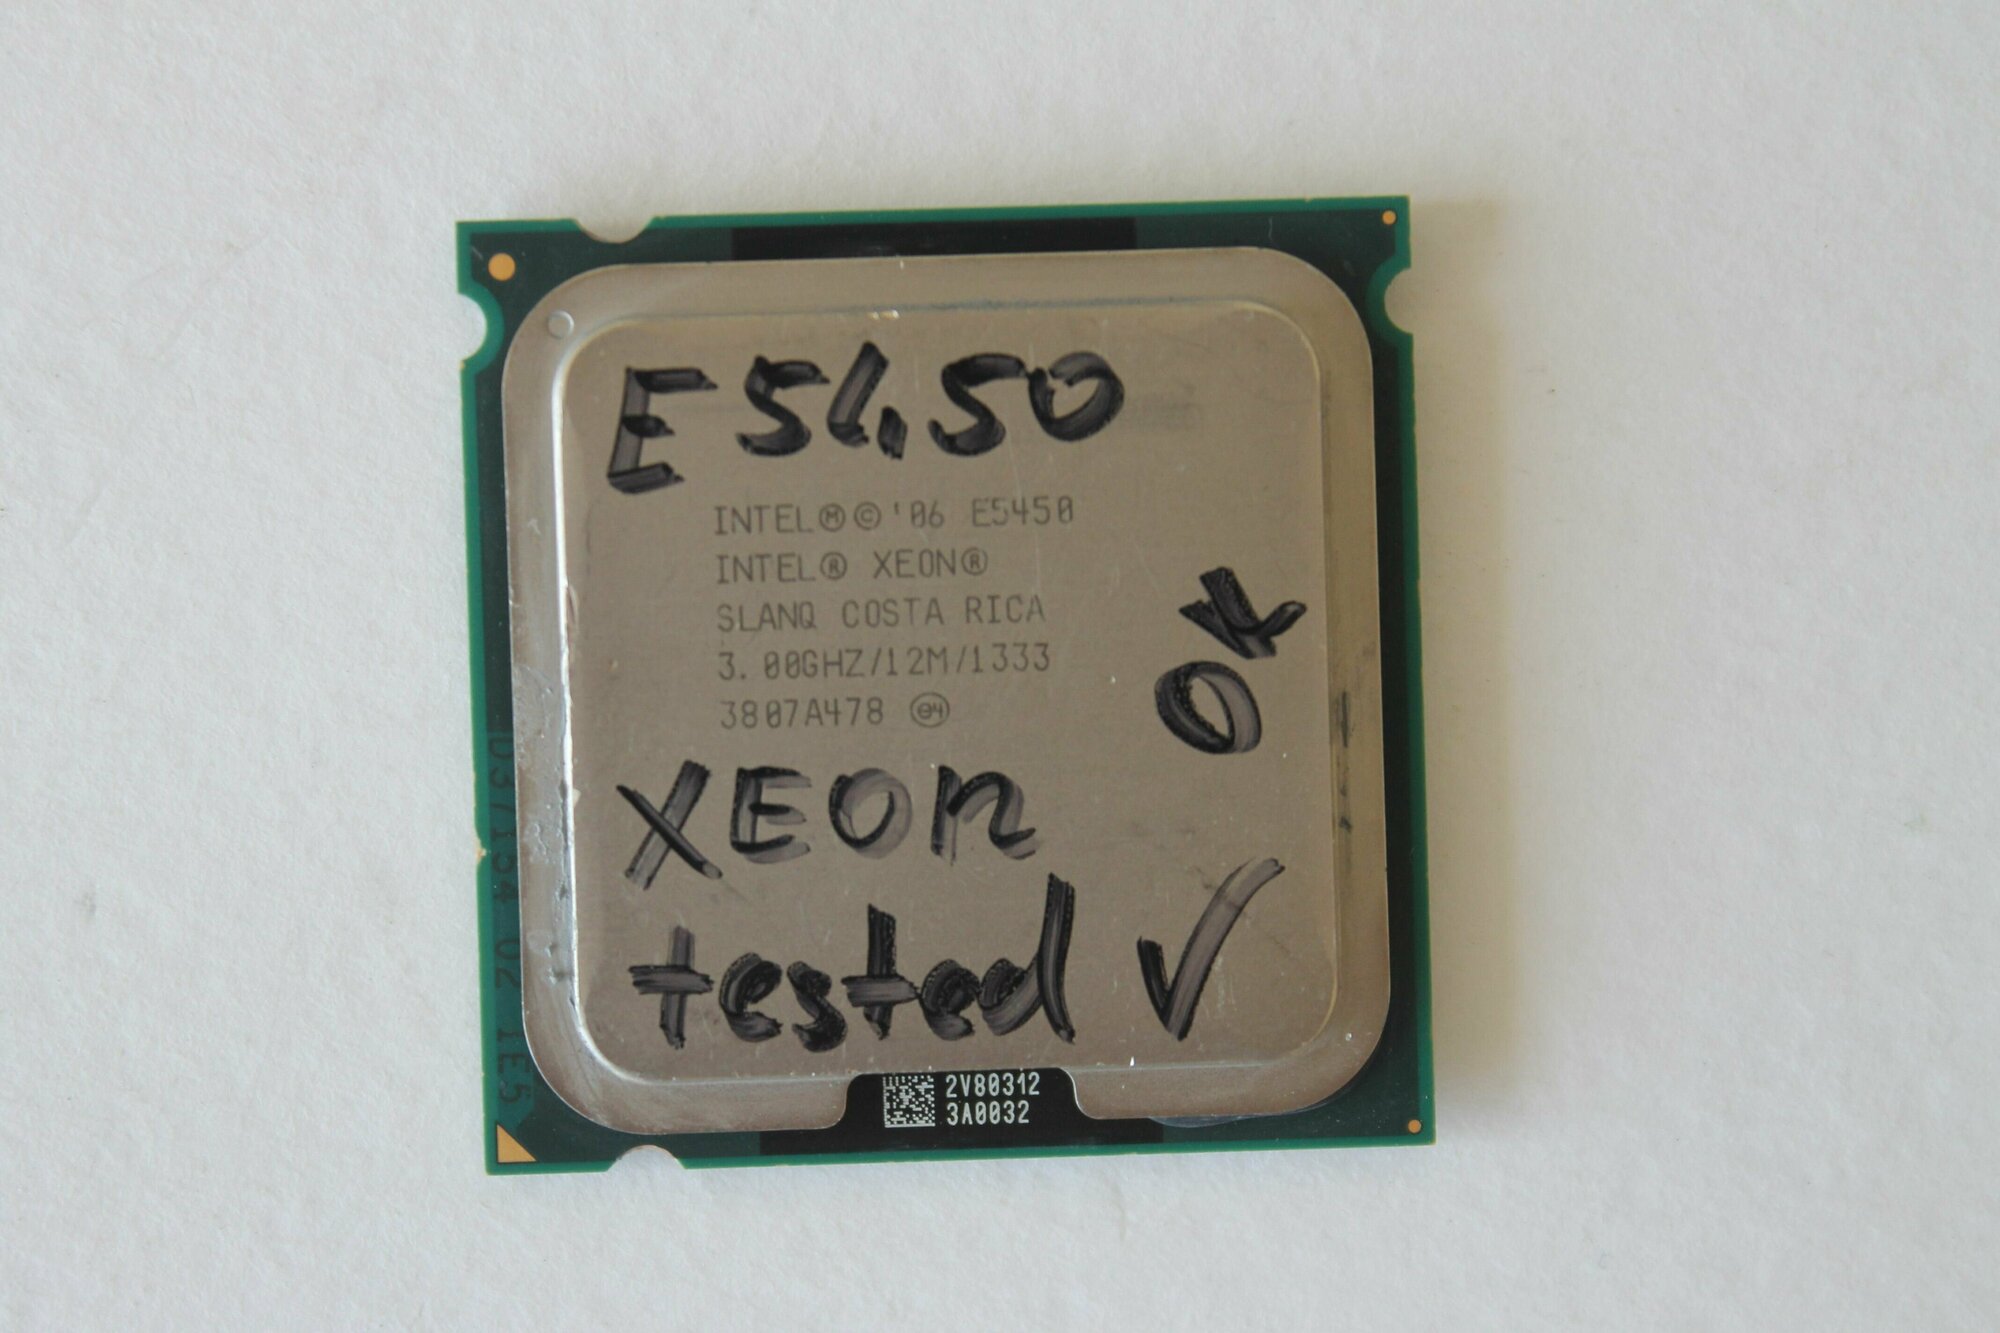 Процессор Intel Xeon E-5450, Harpertown, 4 ядра, 4 потока, 3,00Ghz, 80w, LGA 775, LGA 771